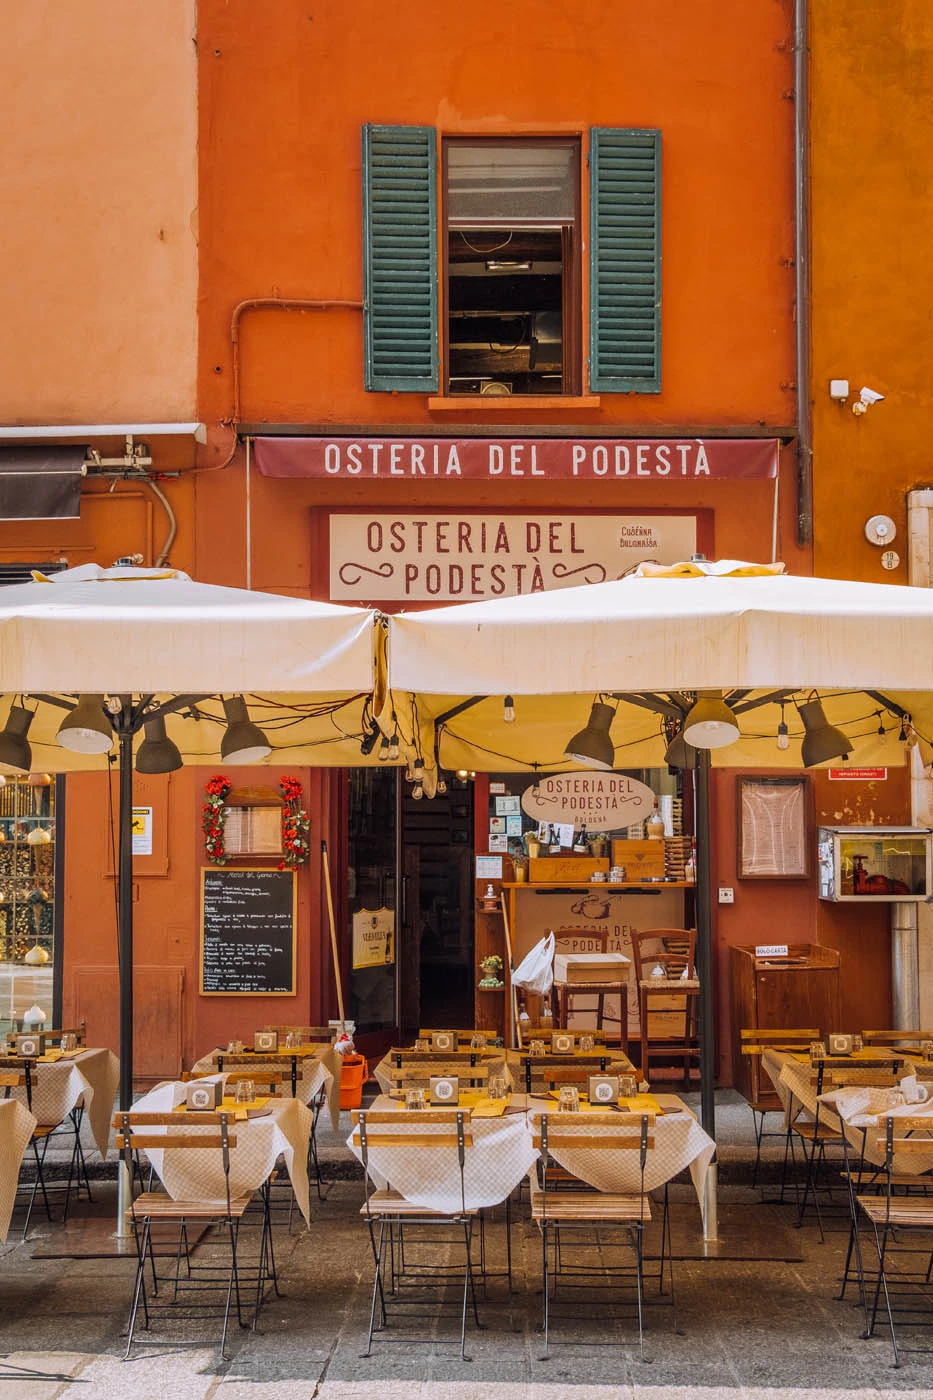 Where to Stay in Bologna - Quadrilatero - Osteria del Podestà